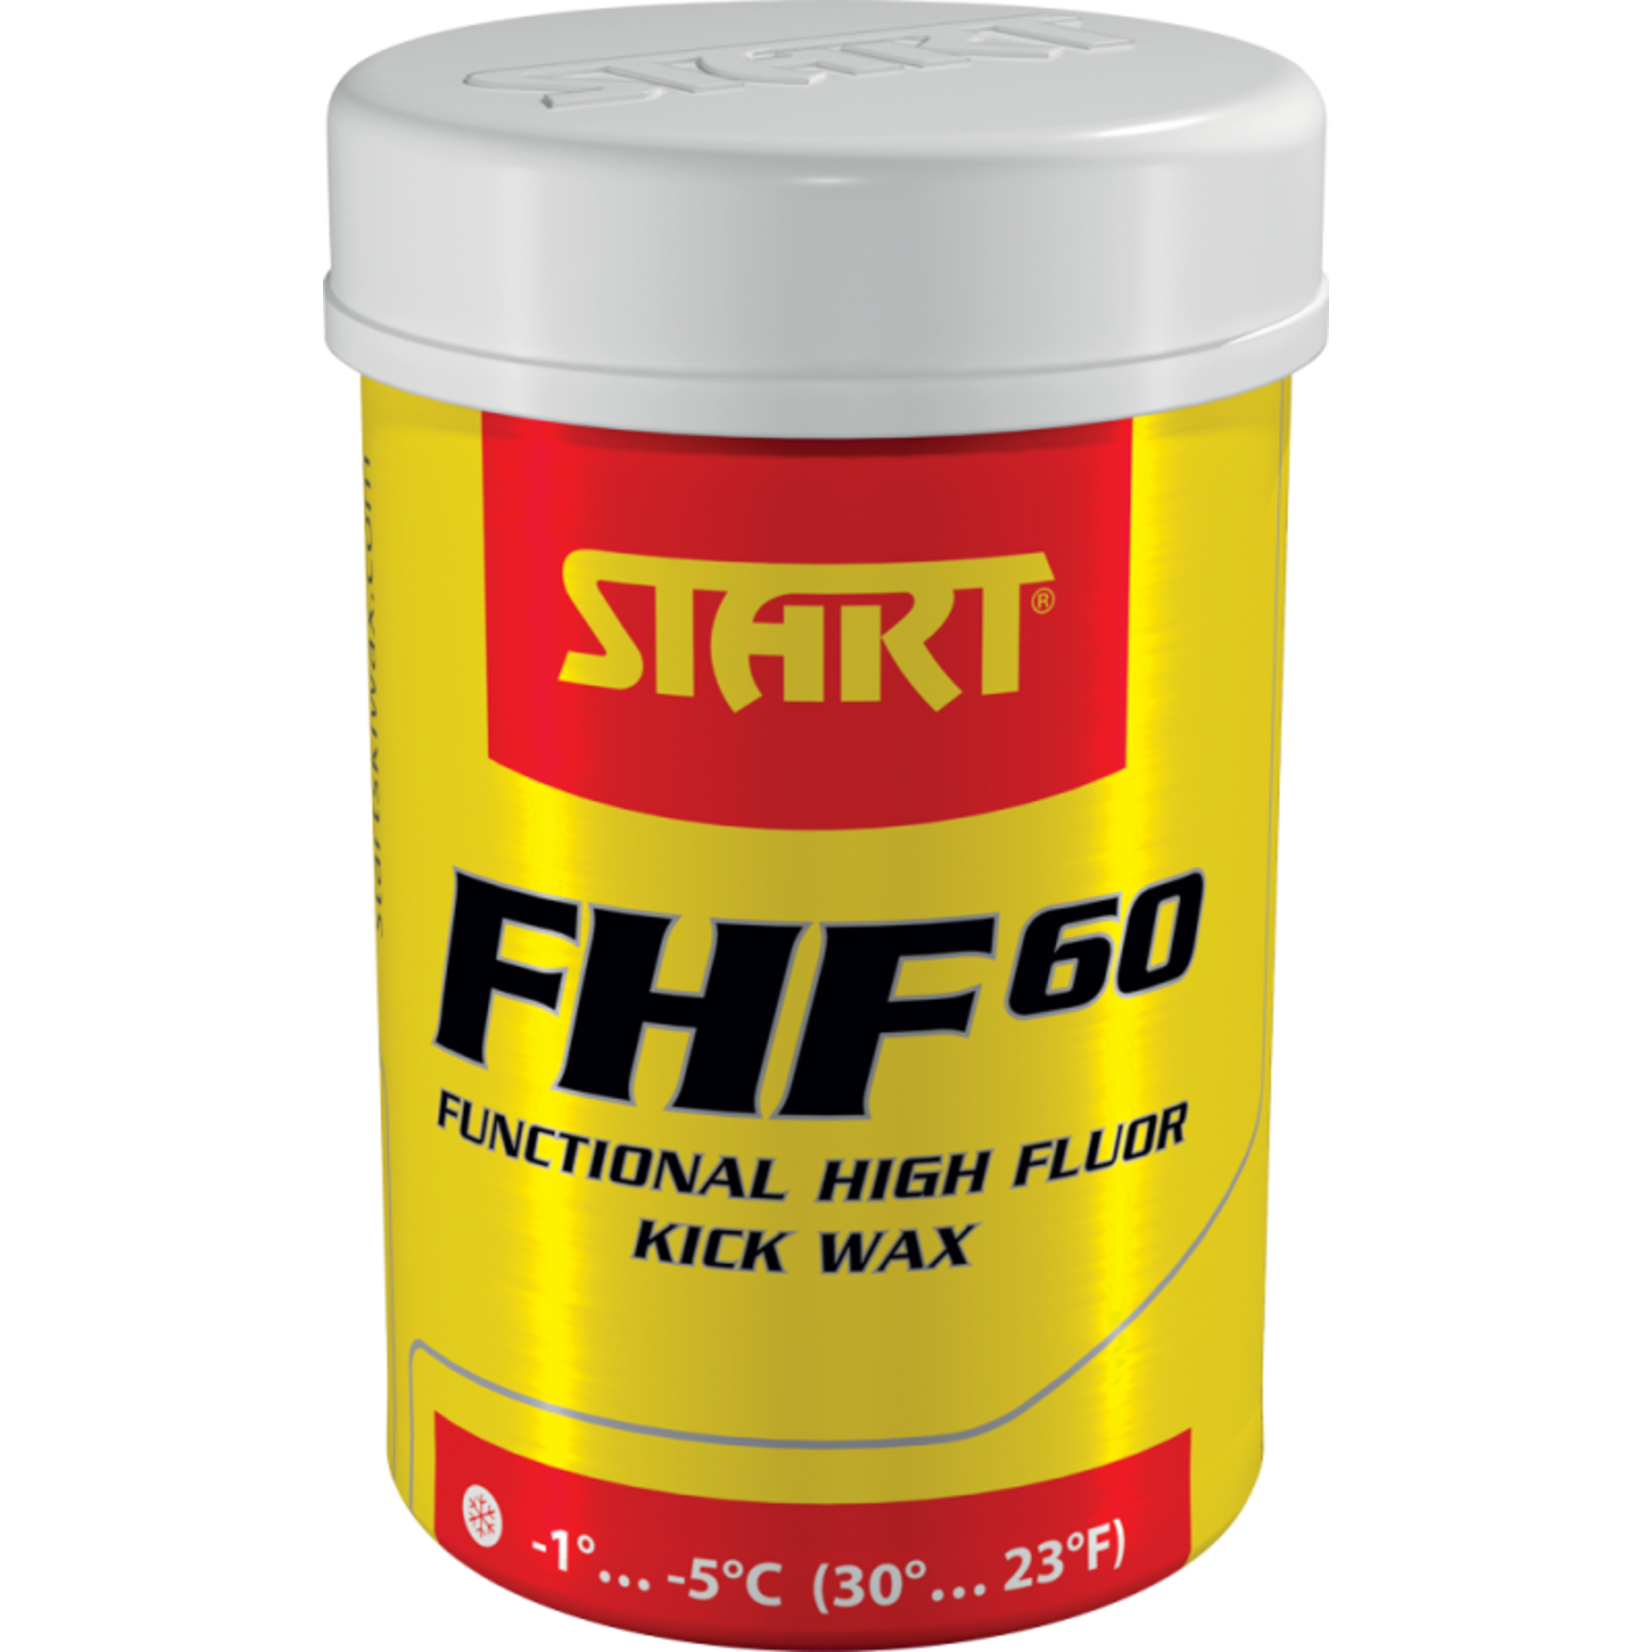 Start Fart de retenue à haut fluor FHF60 rouge -1/-5 45 g